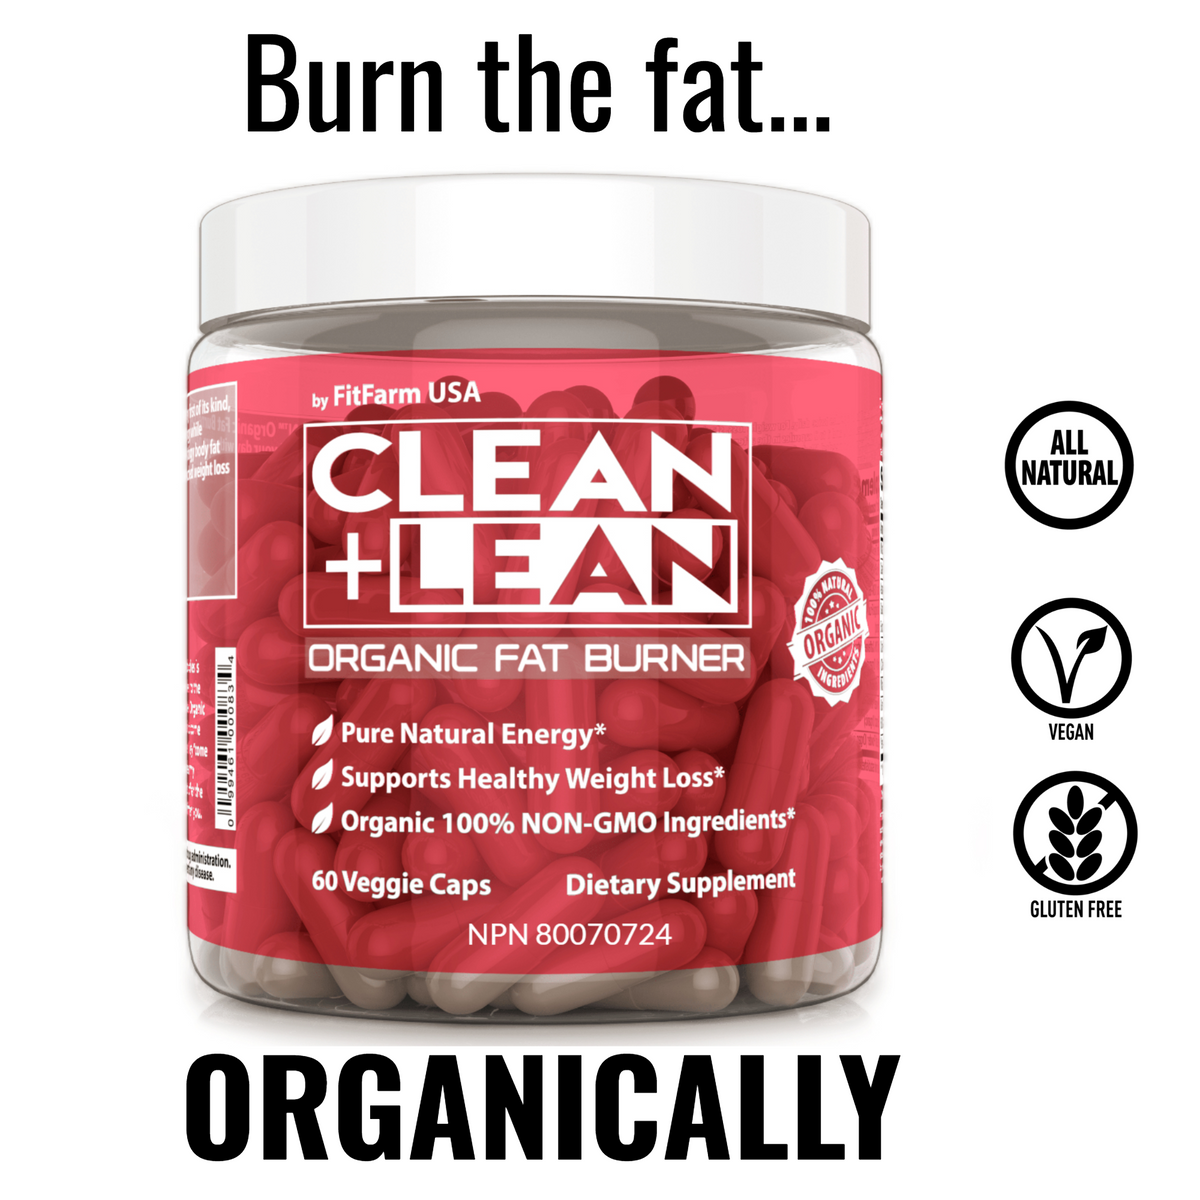 CLEAN+LEAN ORGANIC FAT BURNER: FIRST EVER 100% ORGANIC FAT BURNER!